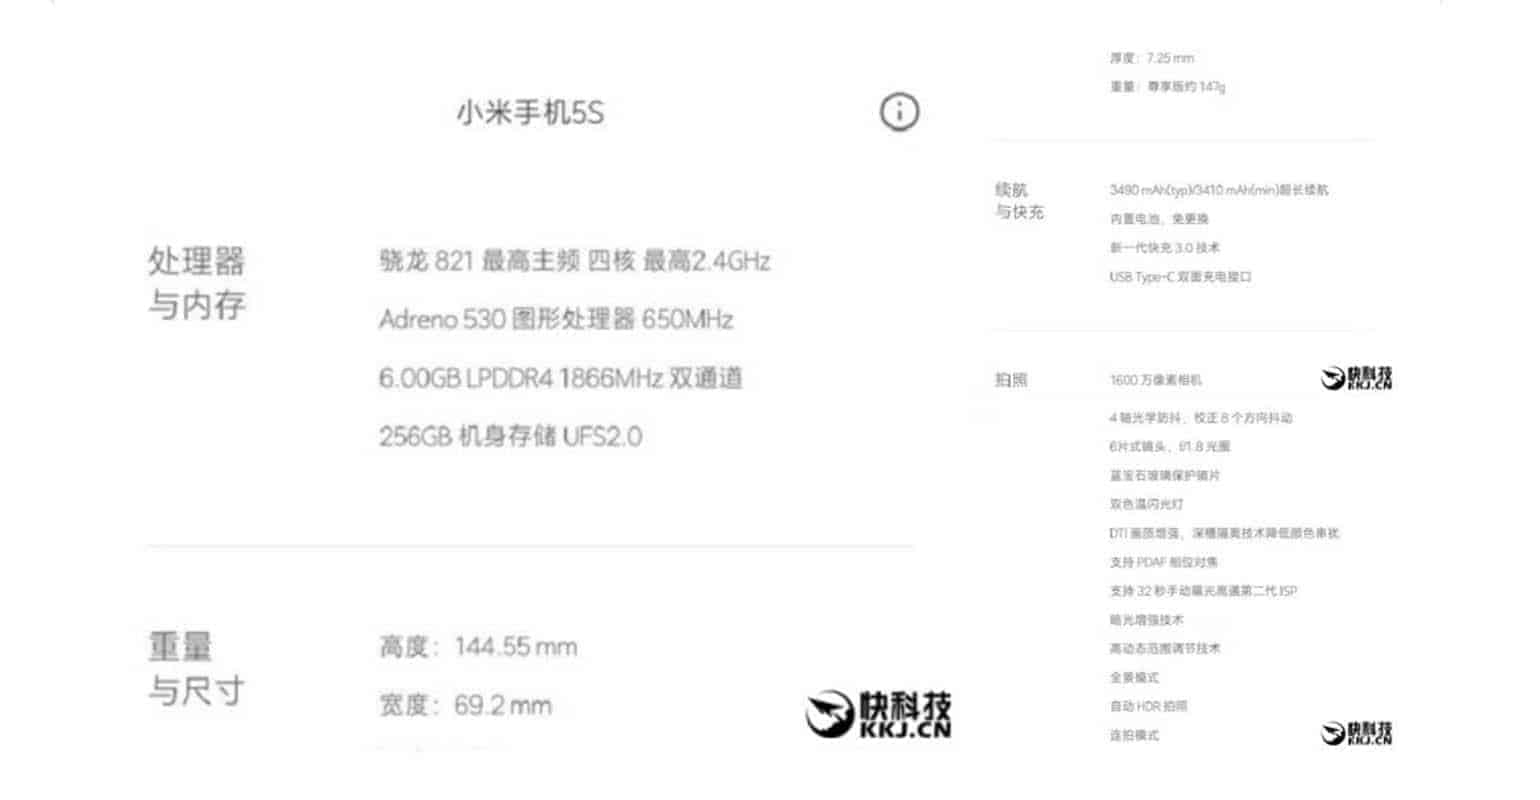 Screenshots Xiaomi Mi5S specs